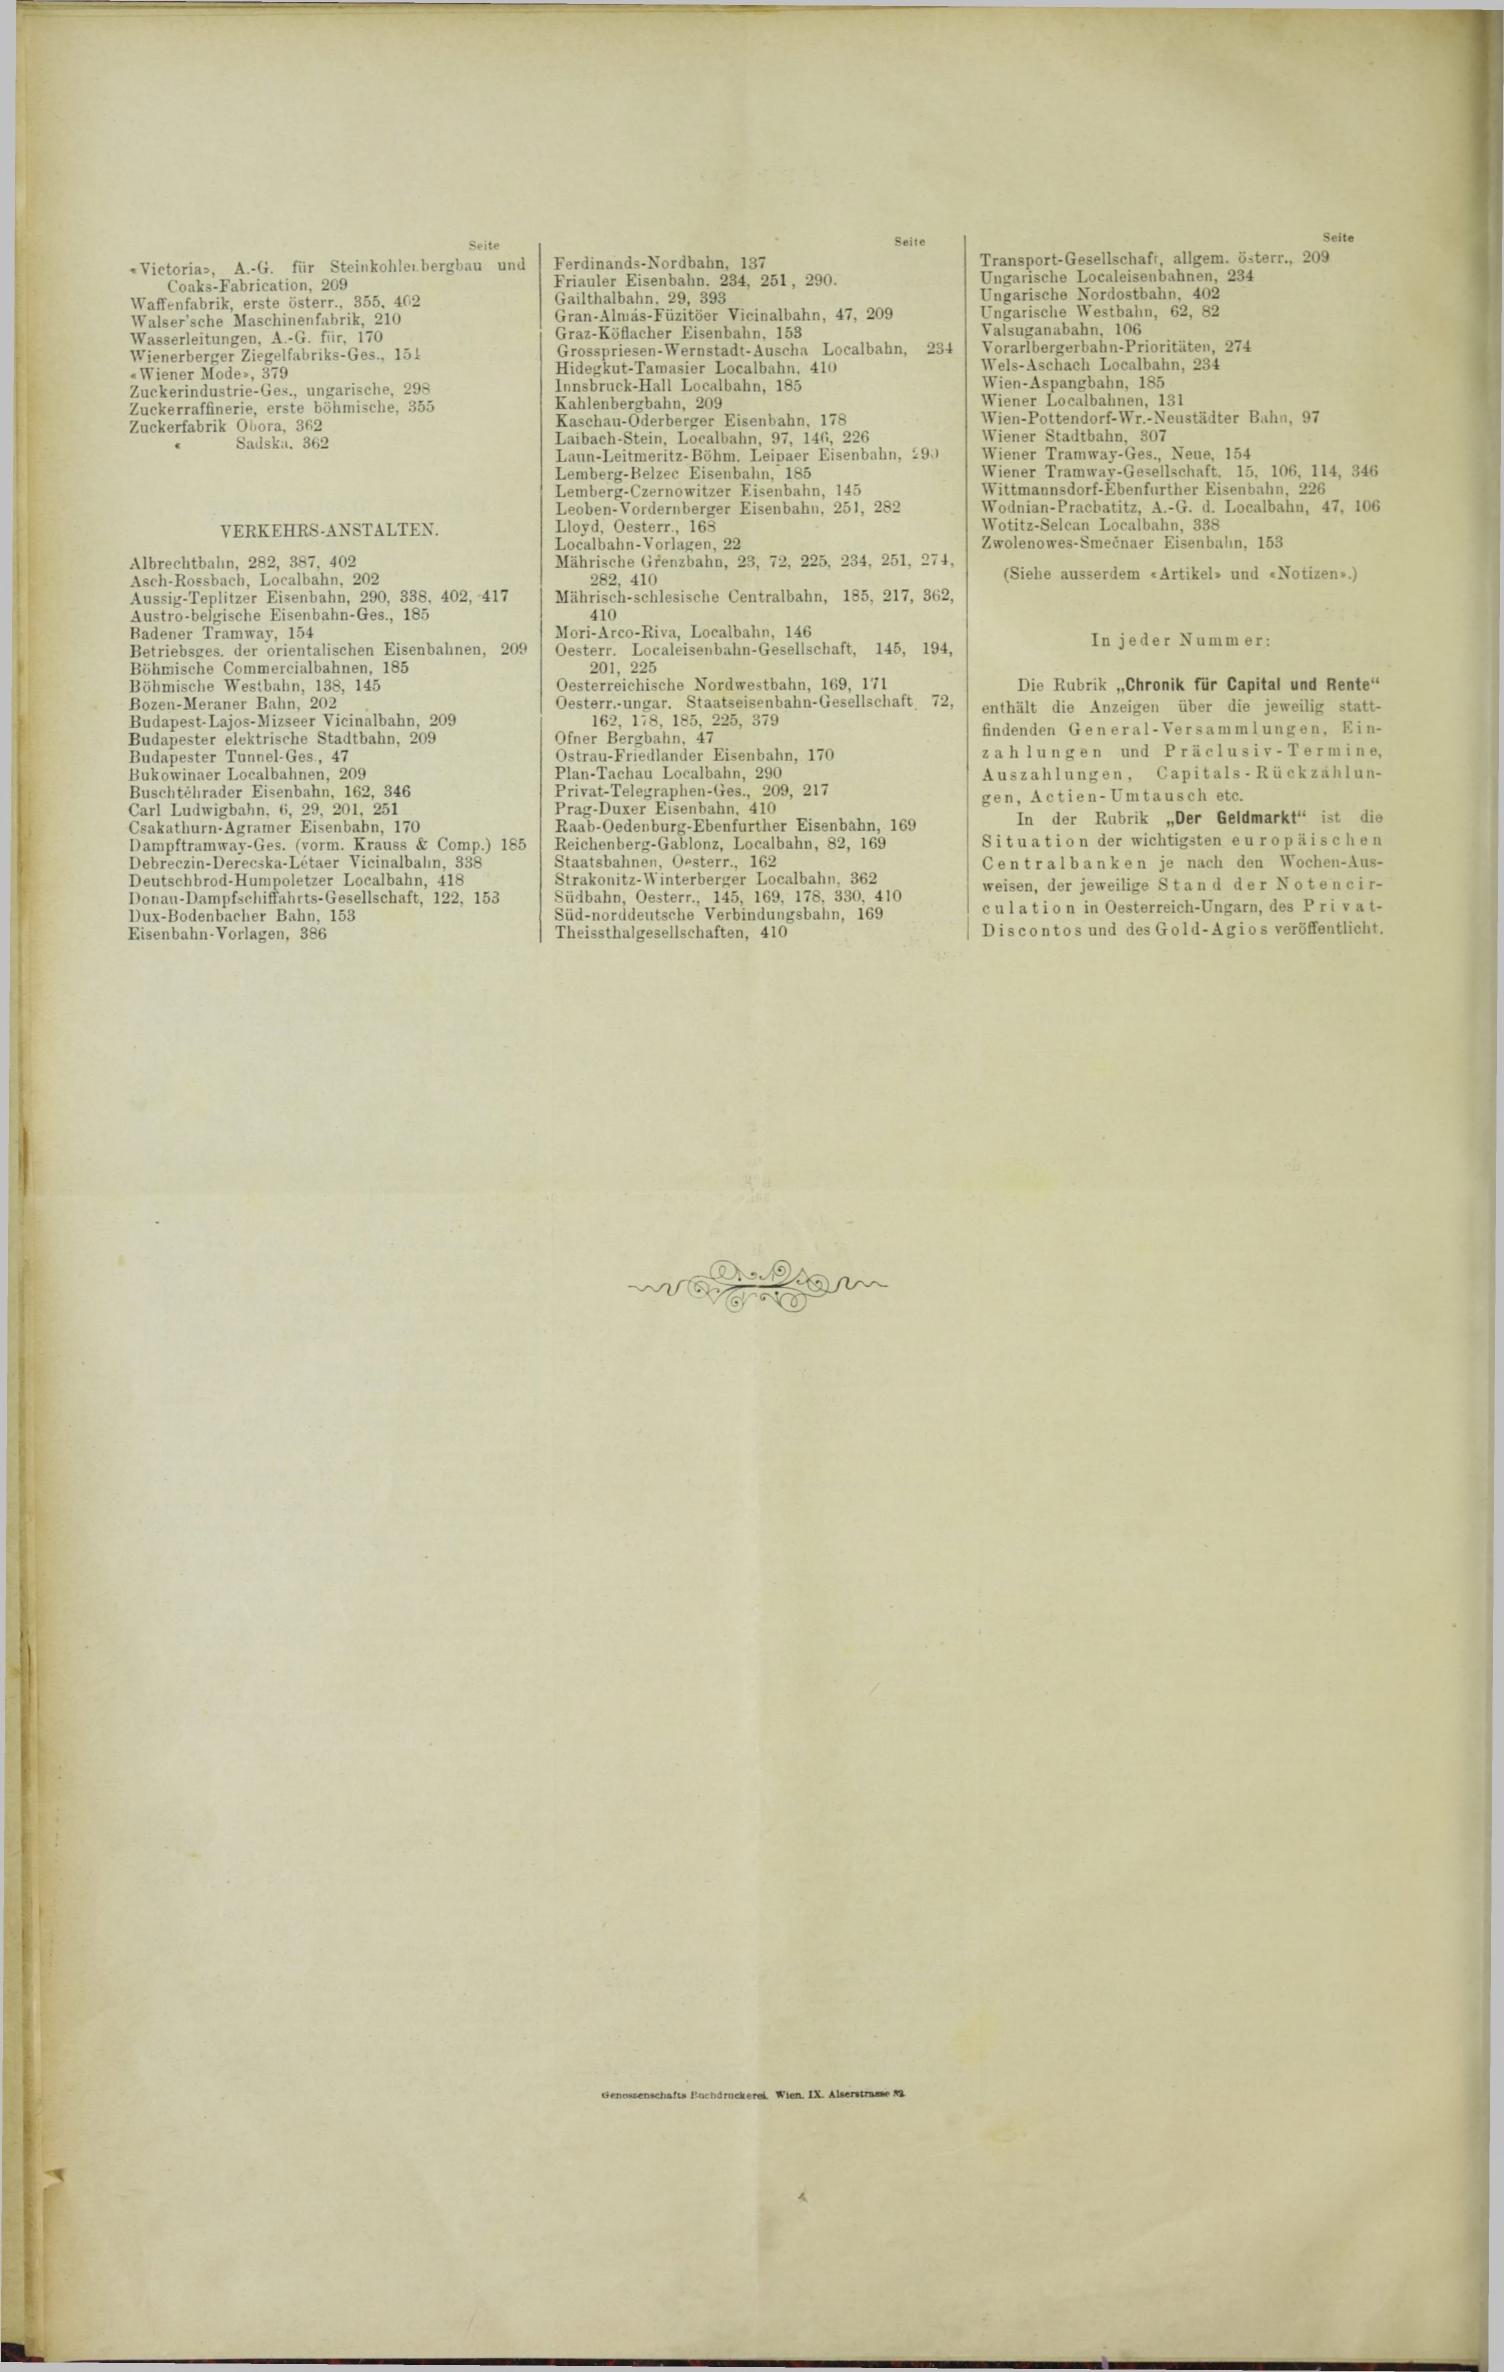 Der Tresor 11.05.1893 - Seite 12